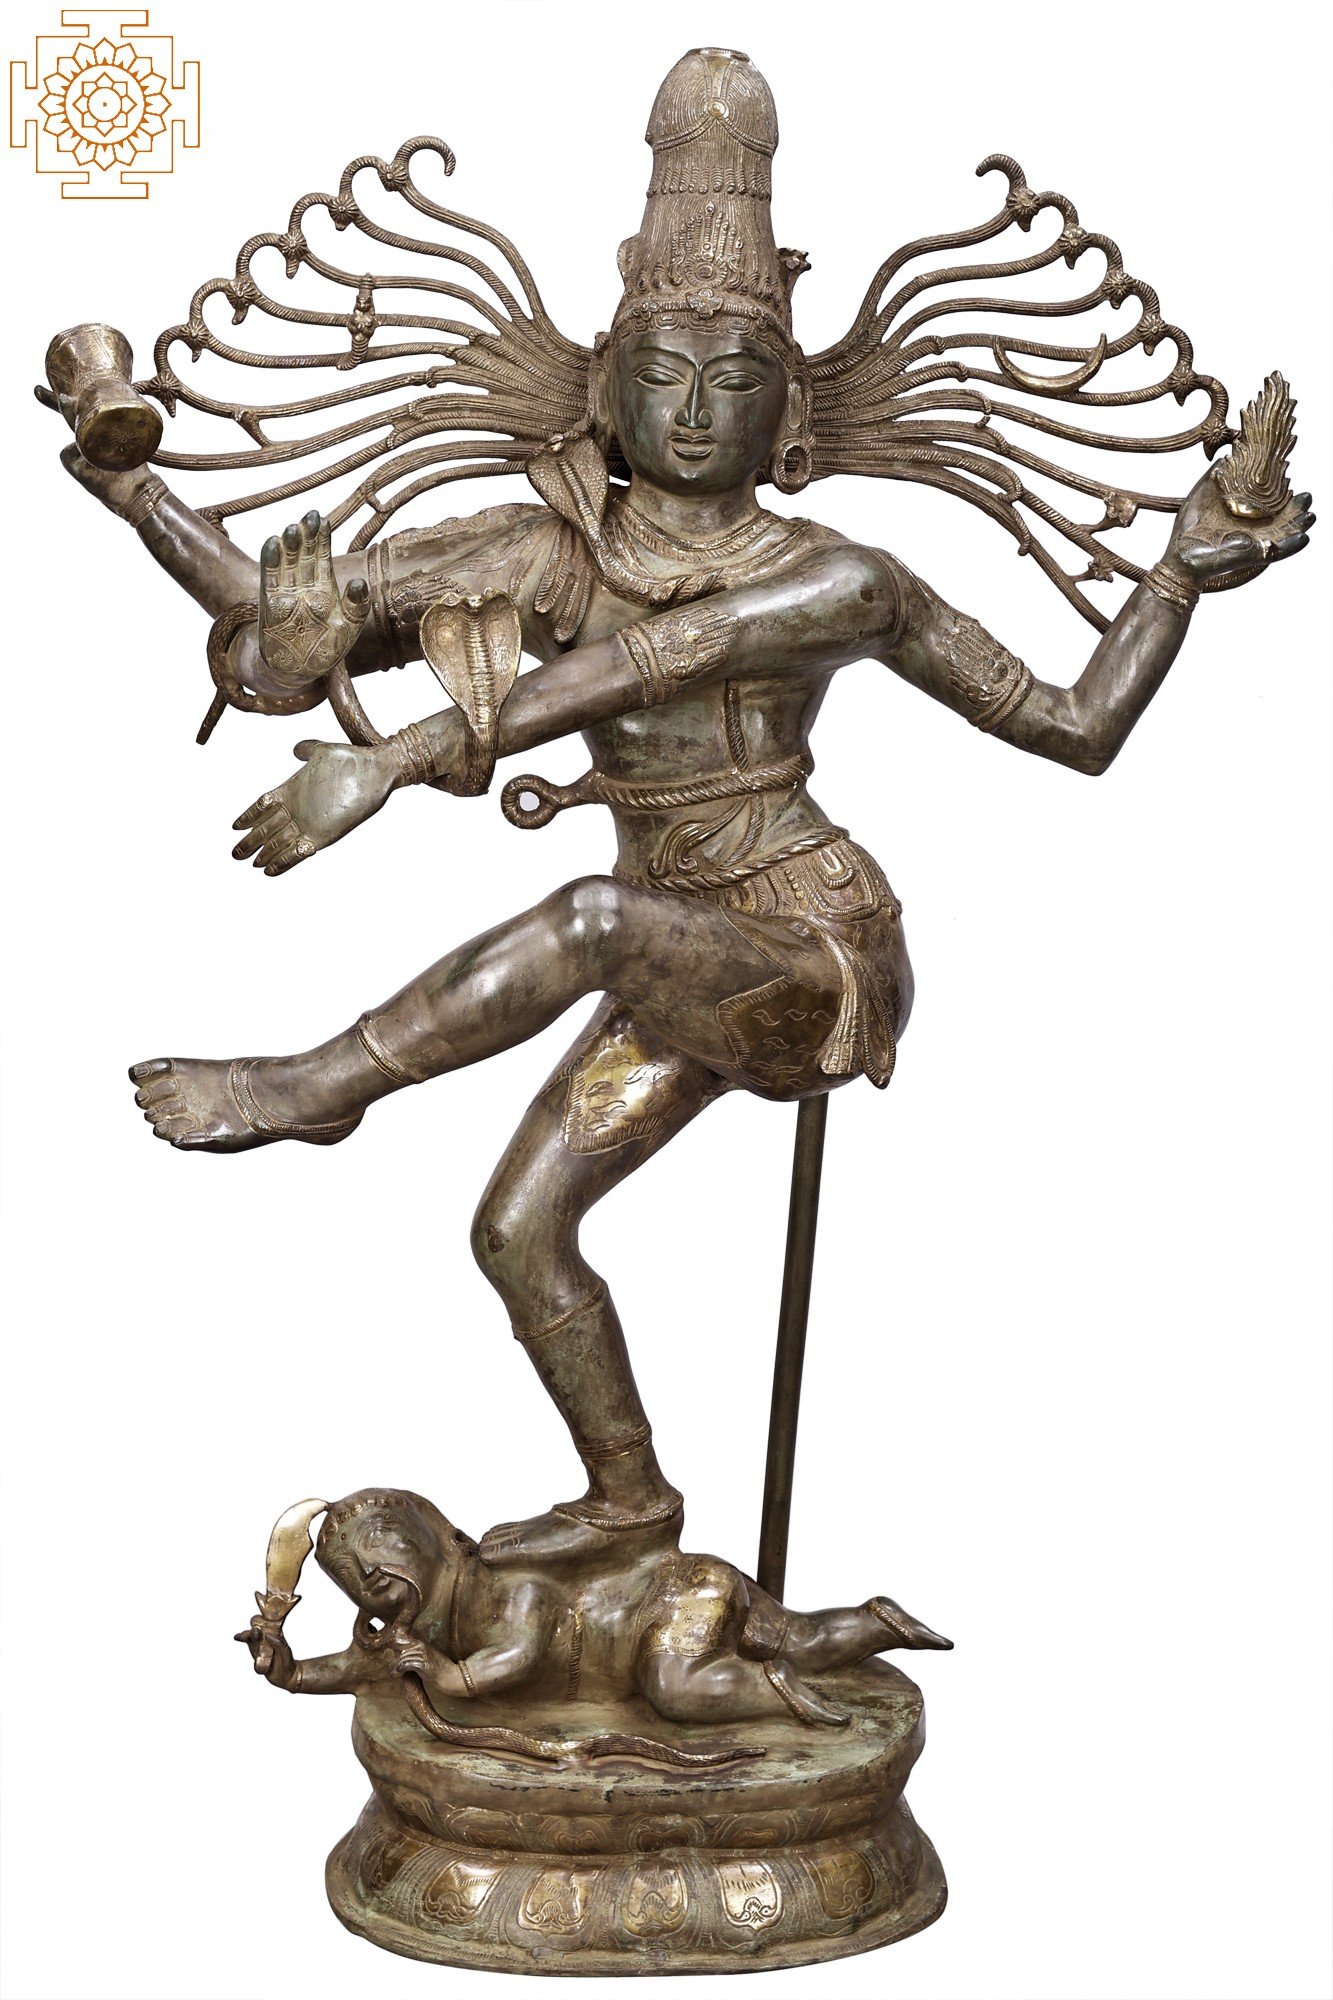 Brass Dancing Shiva Nataraja Statue, Brass Lord Shiva, Dancing